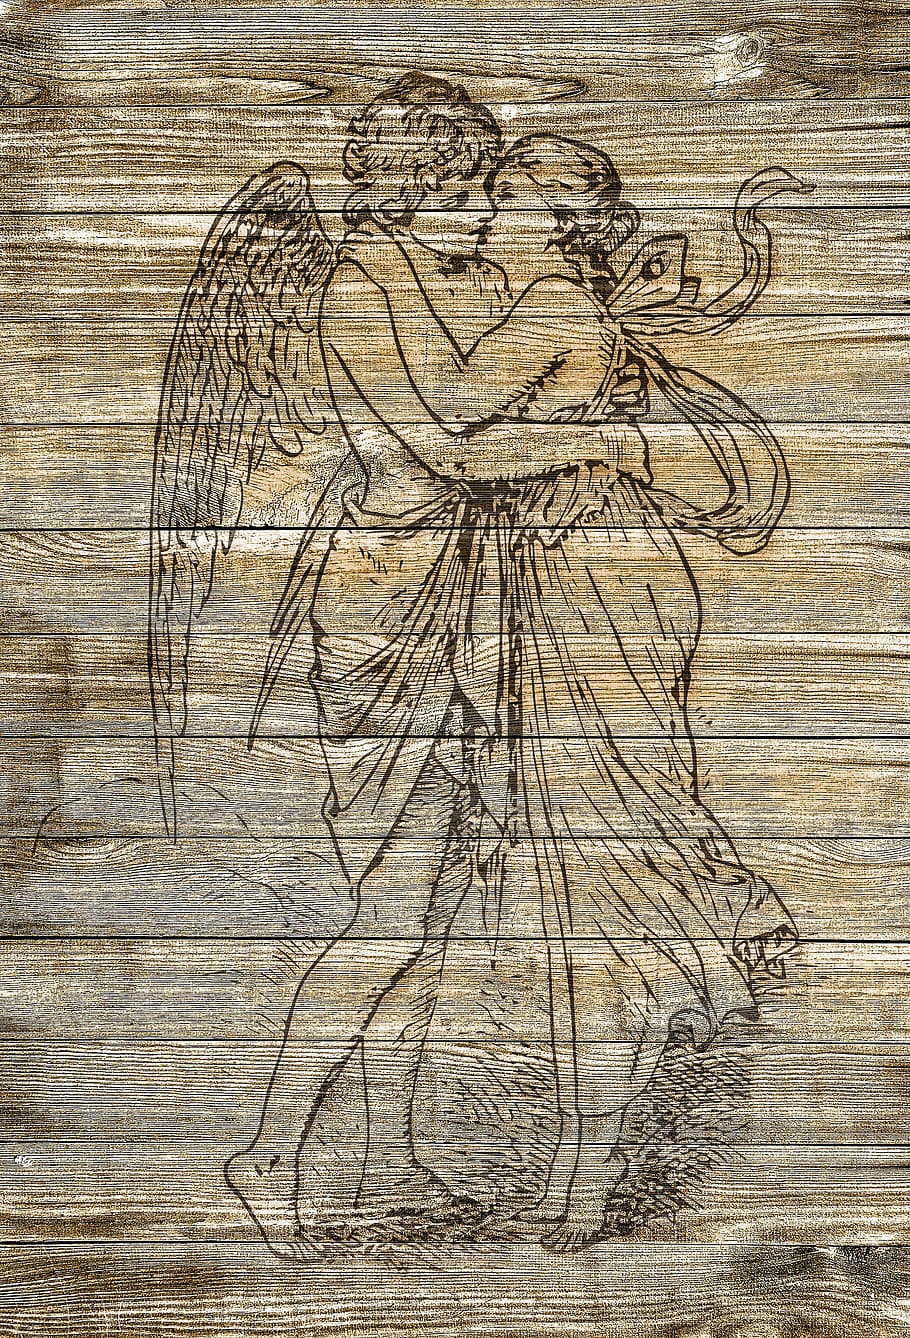 man, woman, kissing, printed, board, on wood, cupid, pair, kiss, vintage